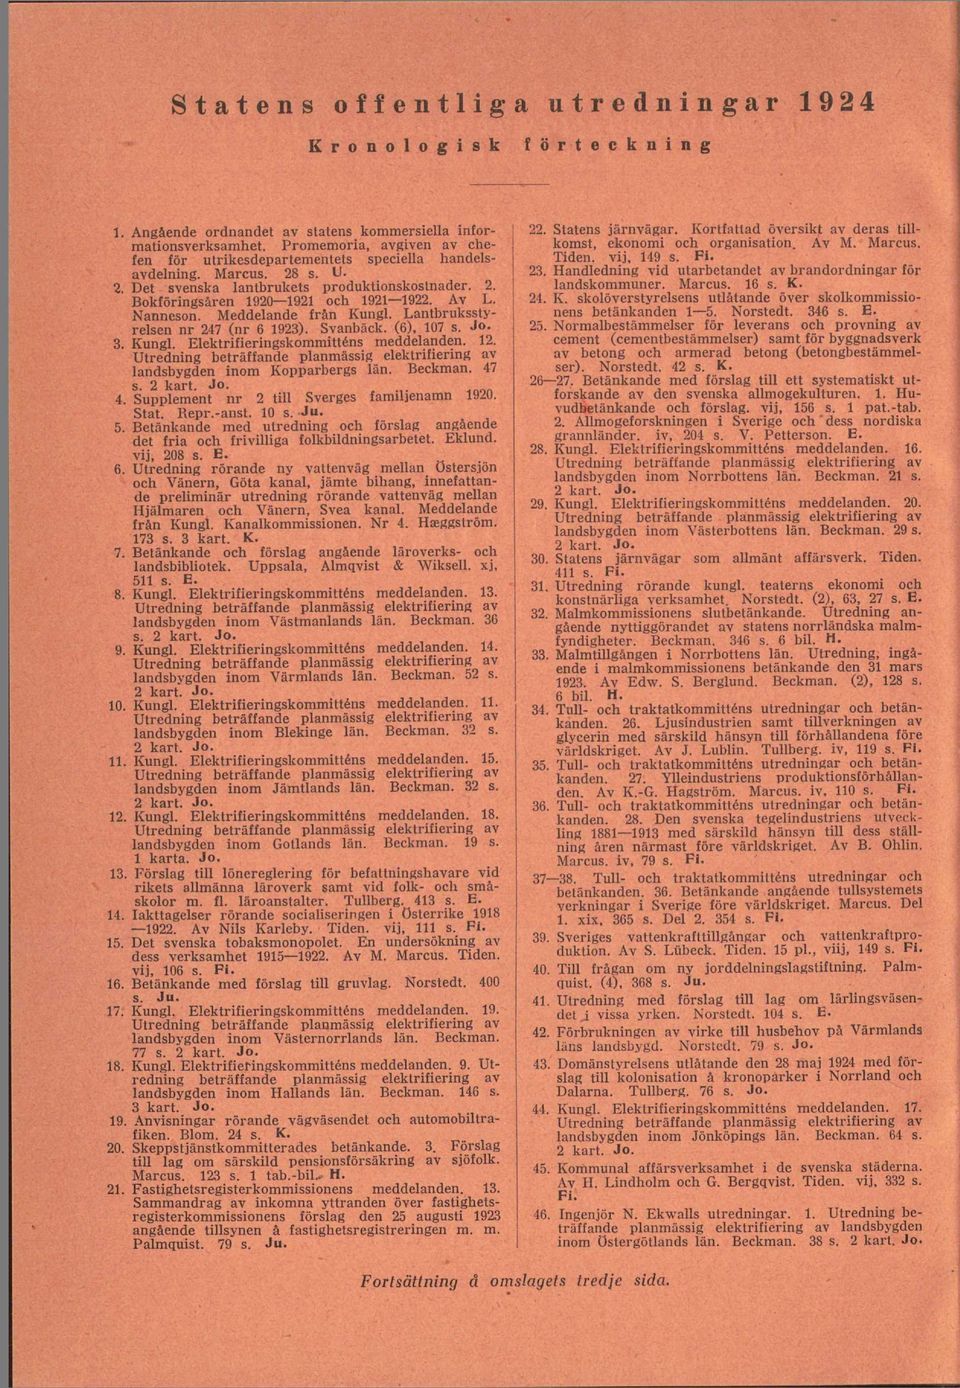 Nanneson. Meddelande från Kungl. Lantbruksstyrelsen nr 247 (nr 6 1923). Svanbäck. (6), 107 s. Jo. 3. Kungl. Elektrifieringskommitténs meddelanden. 12.